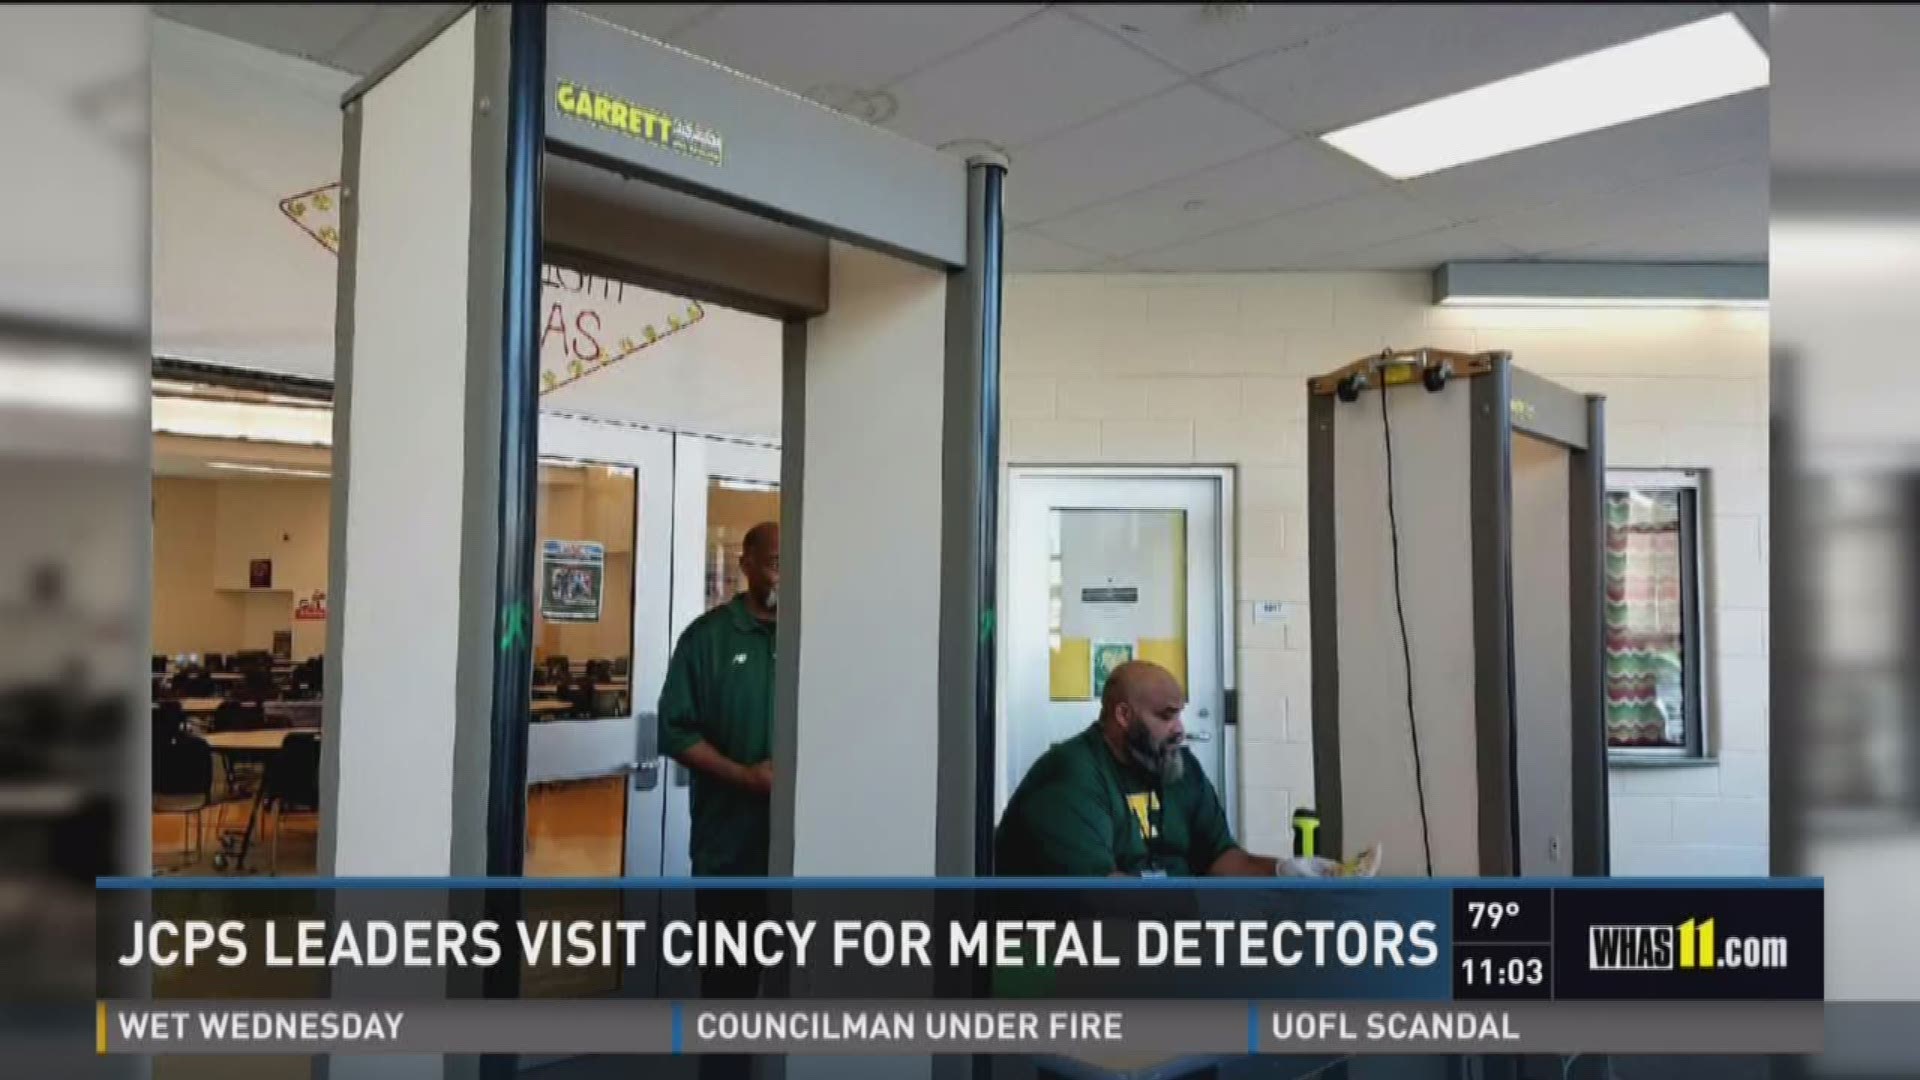 JCPS leaders visit Cincy for metal detectors